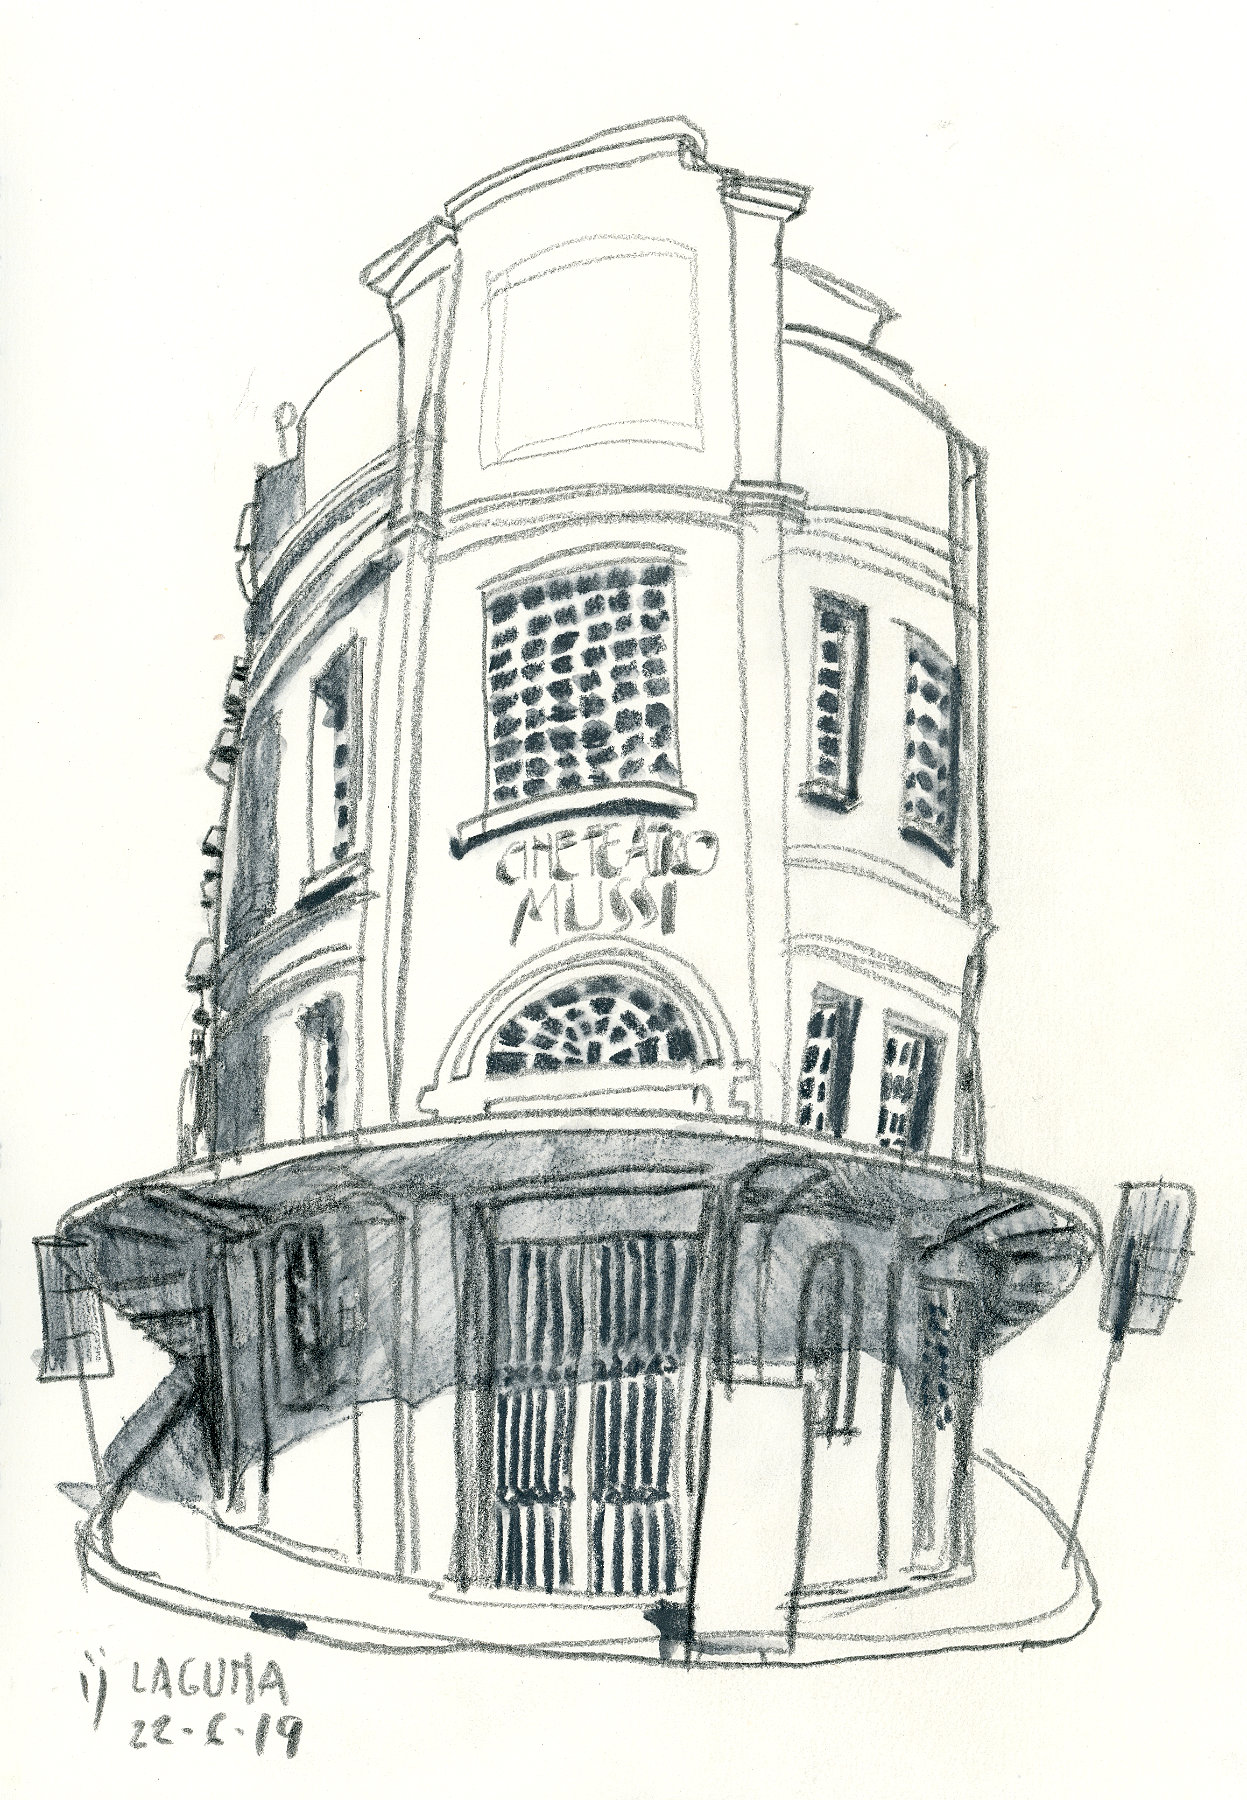 Desenho a lápis da fachada do Cine Teatro Mussi